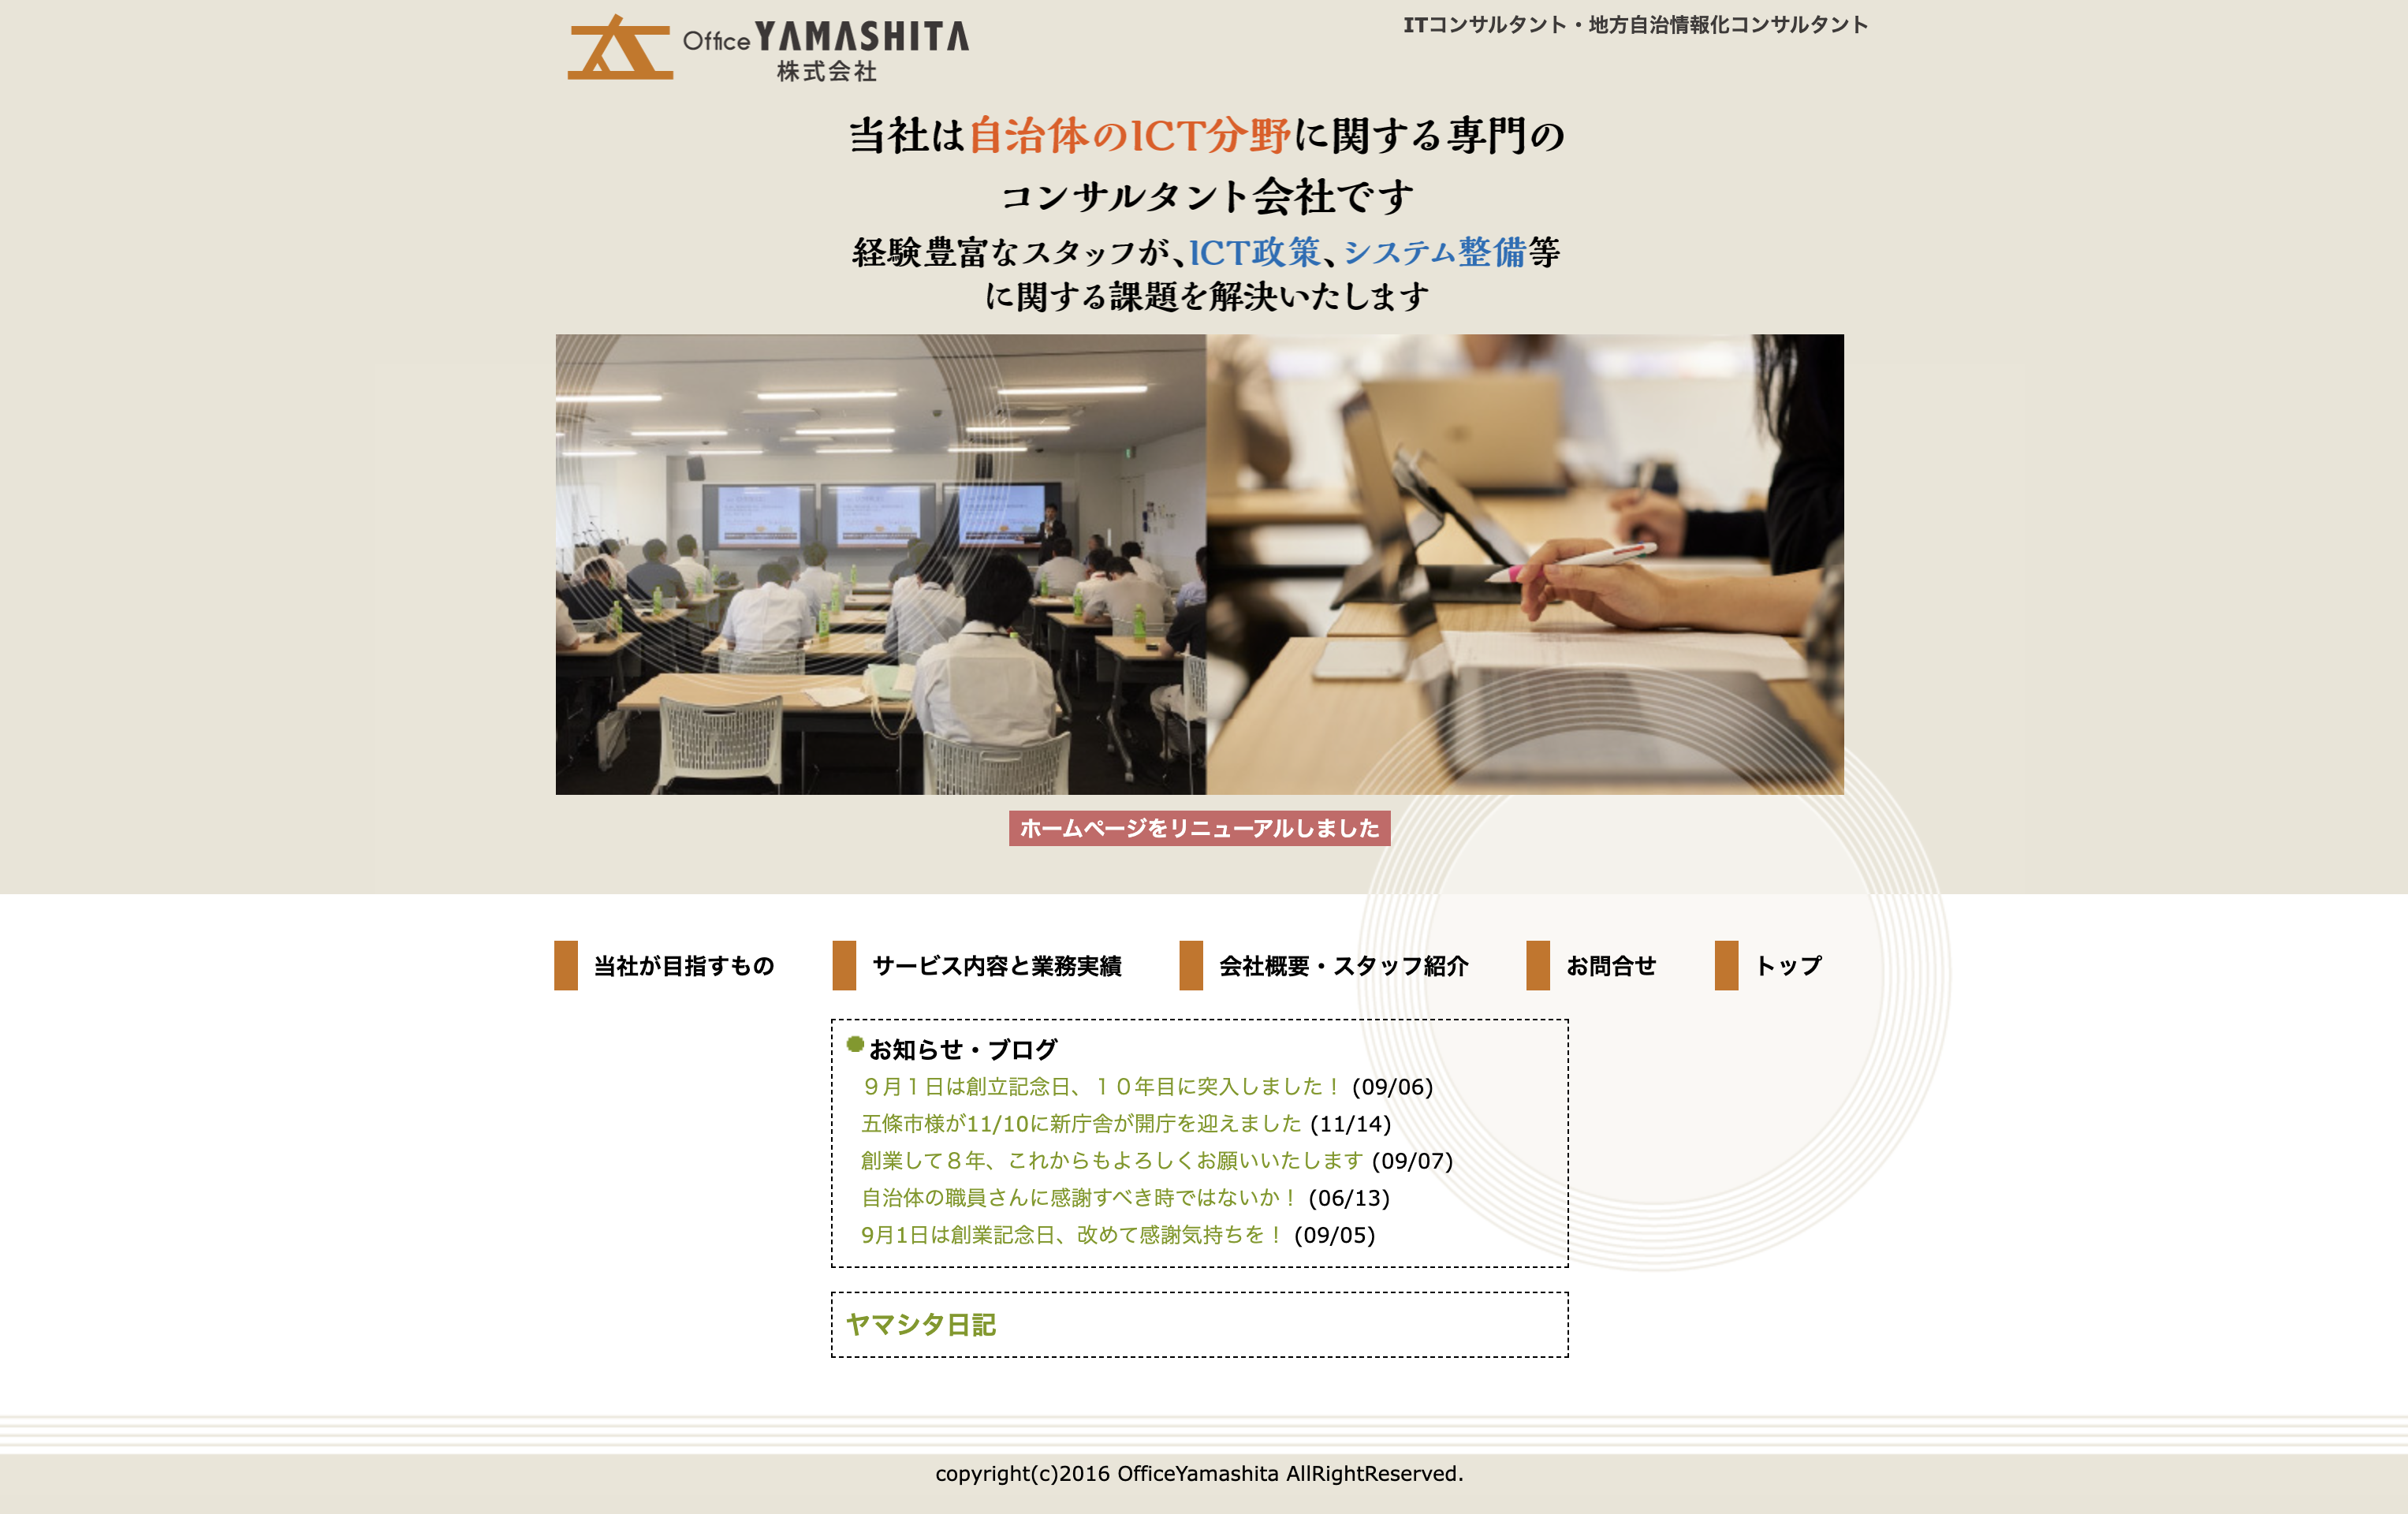 OfficeYAMASHITA株式会社のOfficeYAMASHITA株式会社:ネットワーク構築サービス